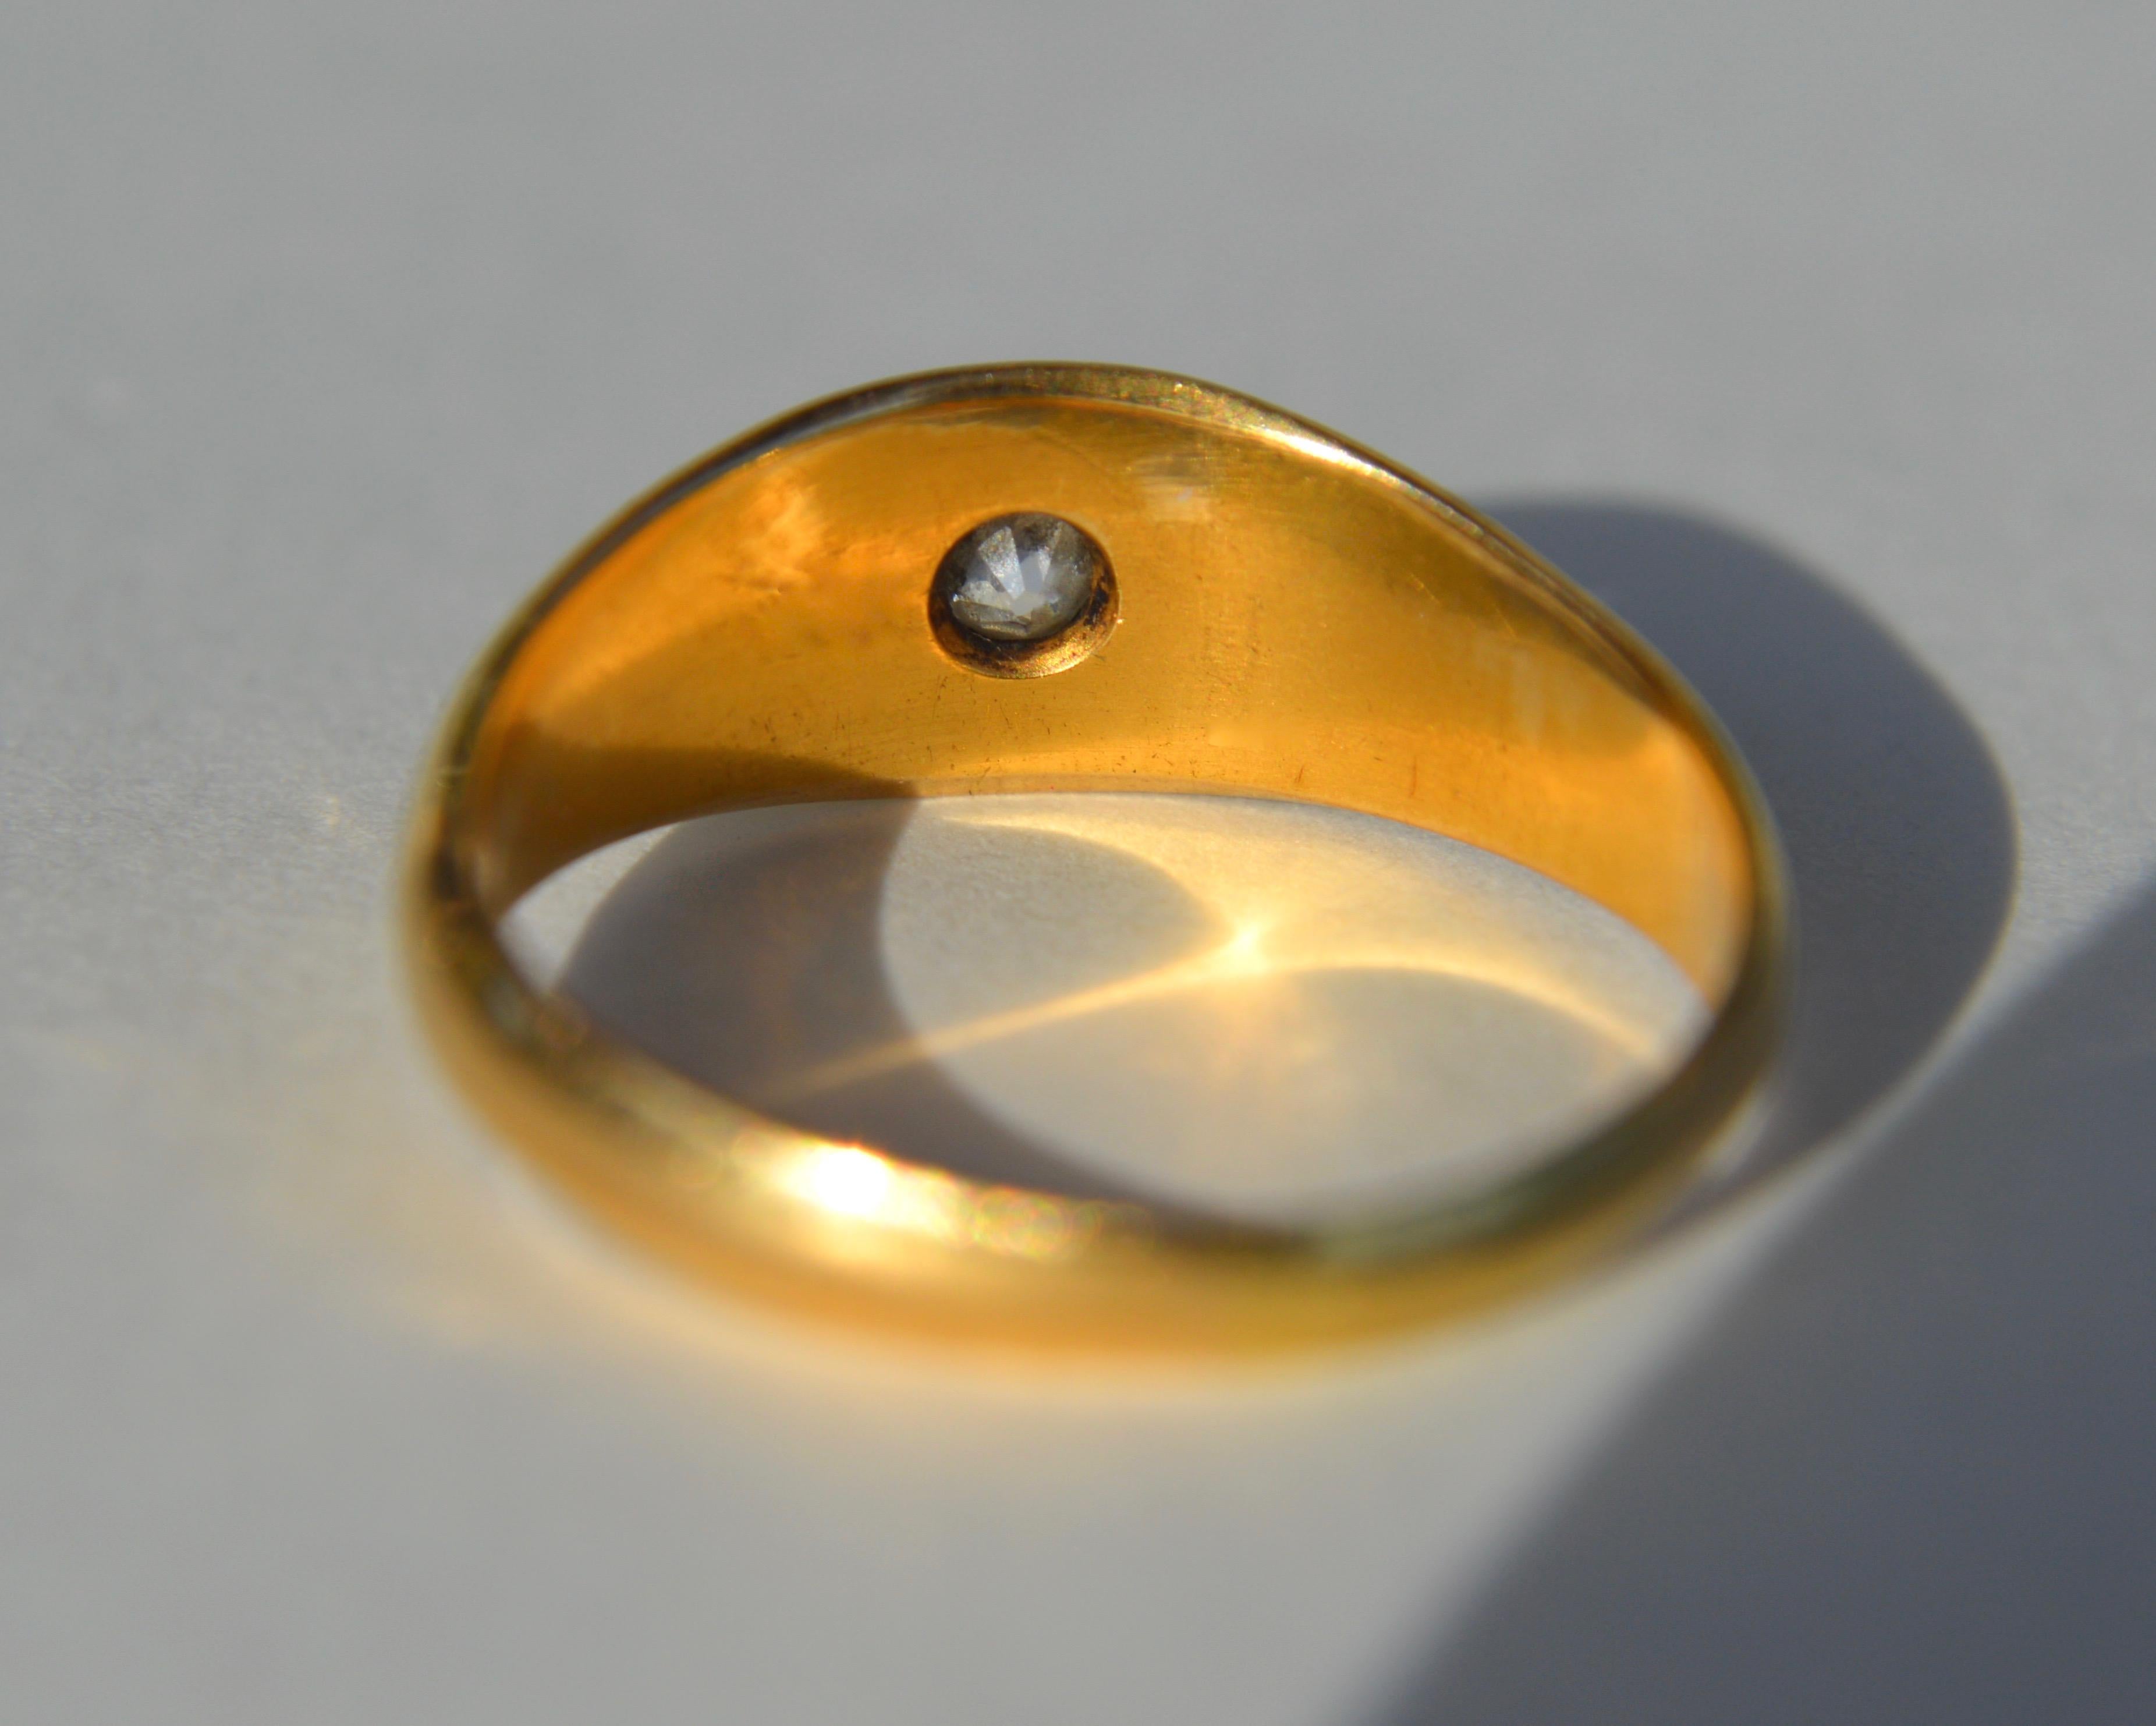 25 carat gold ring